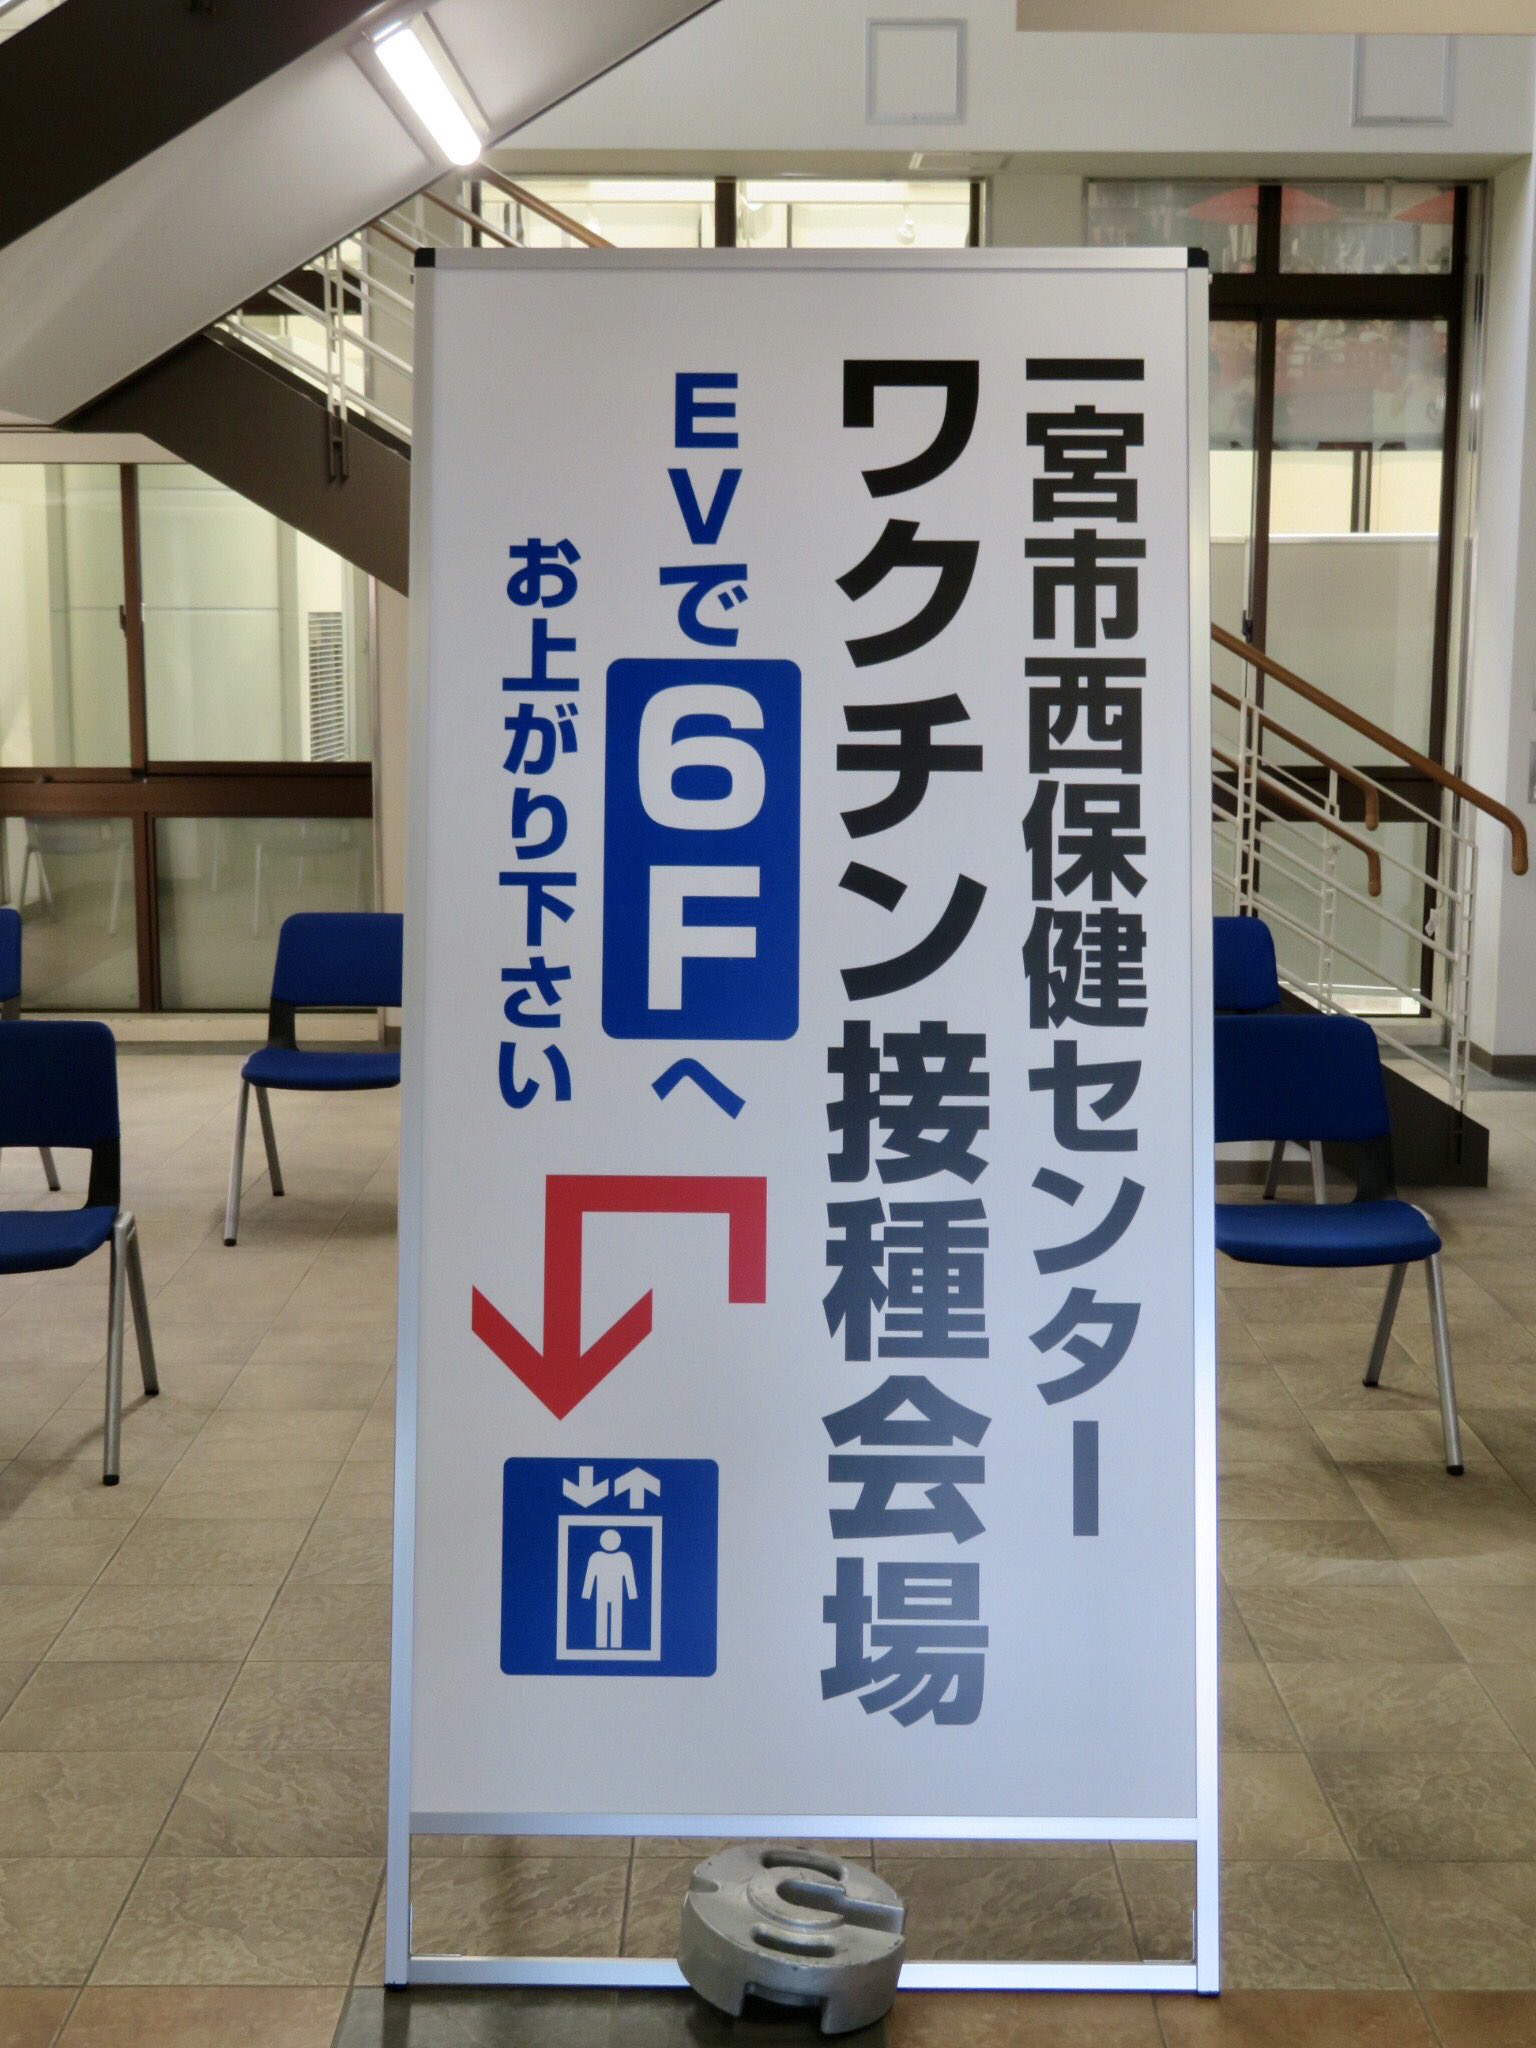 愛知県一宮市のコロナワクチン集団接種の様子を視察、意見交換